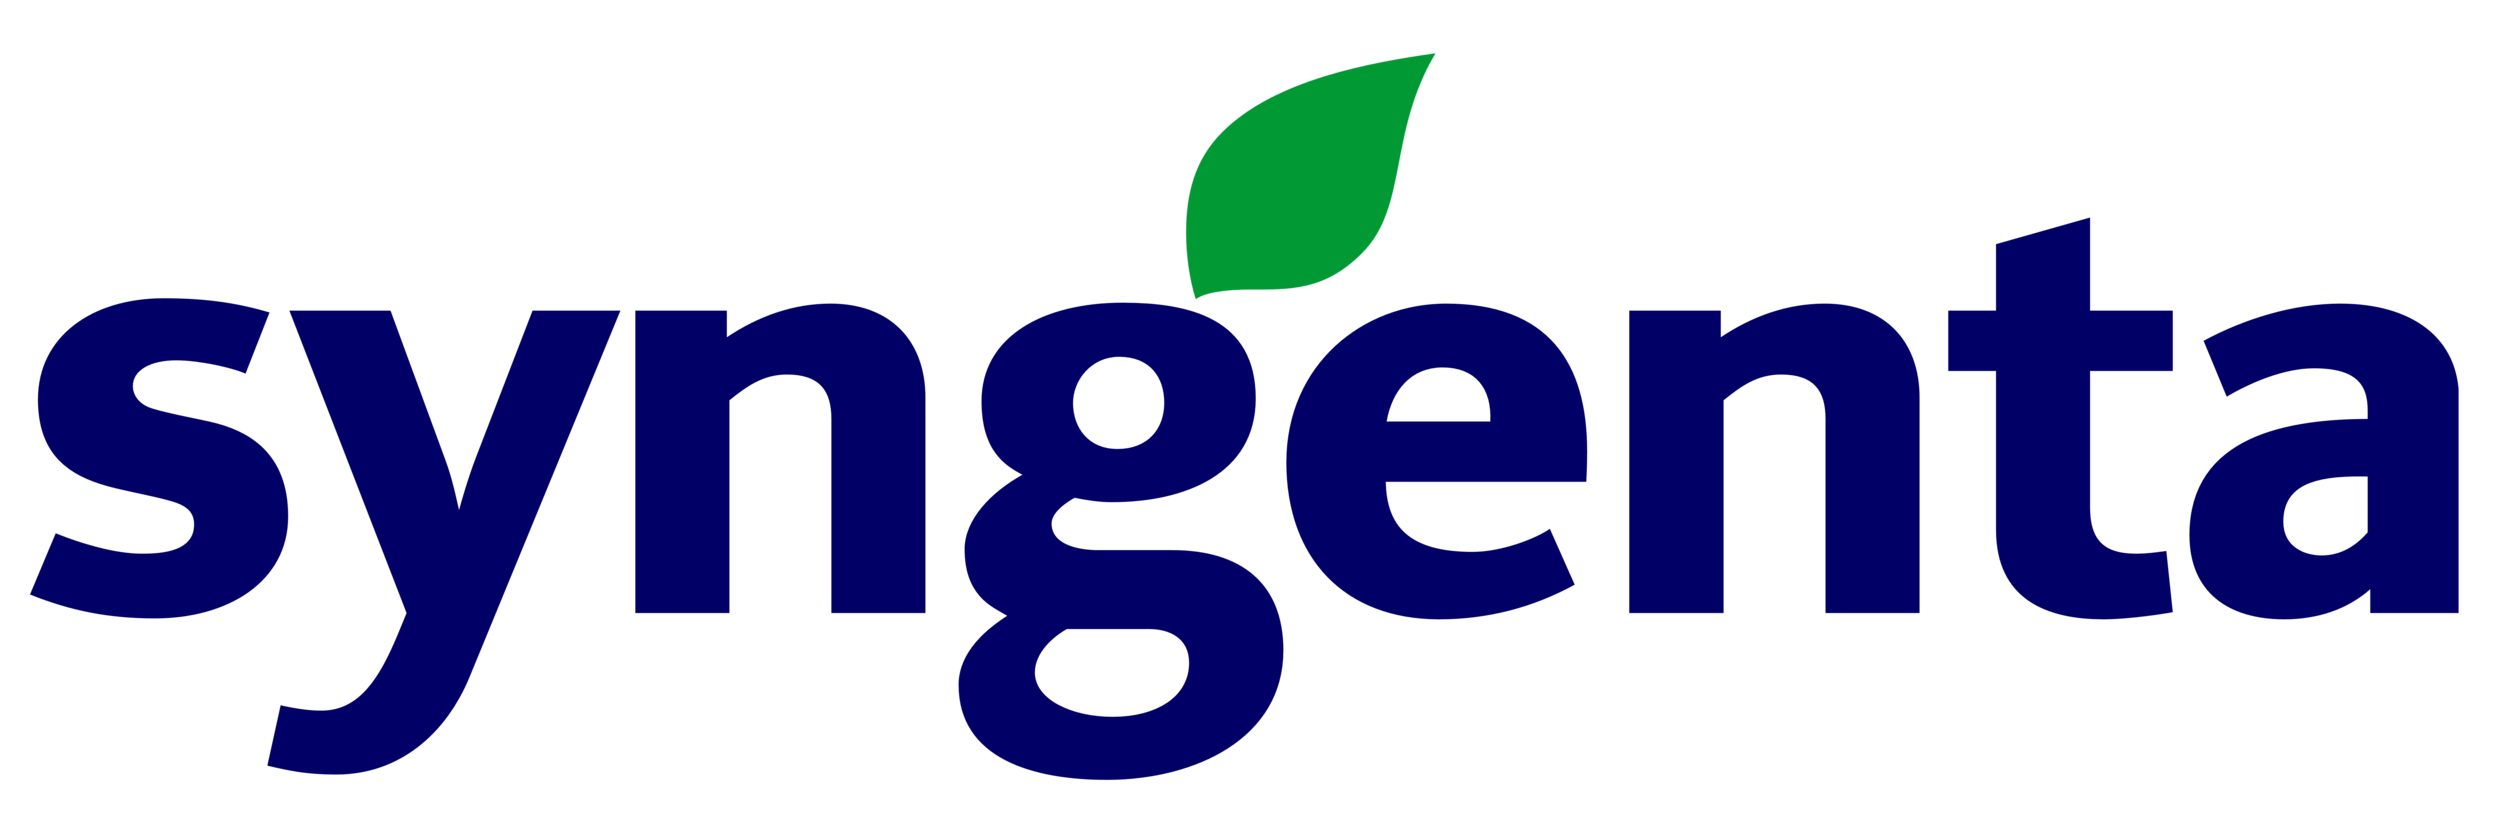 Syngenta_logo[1].png